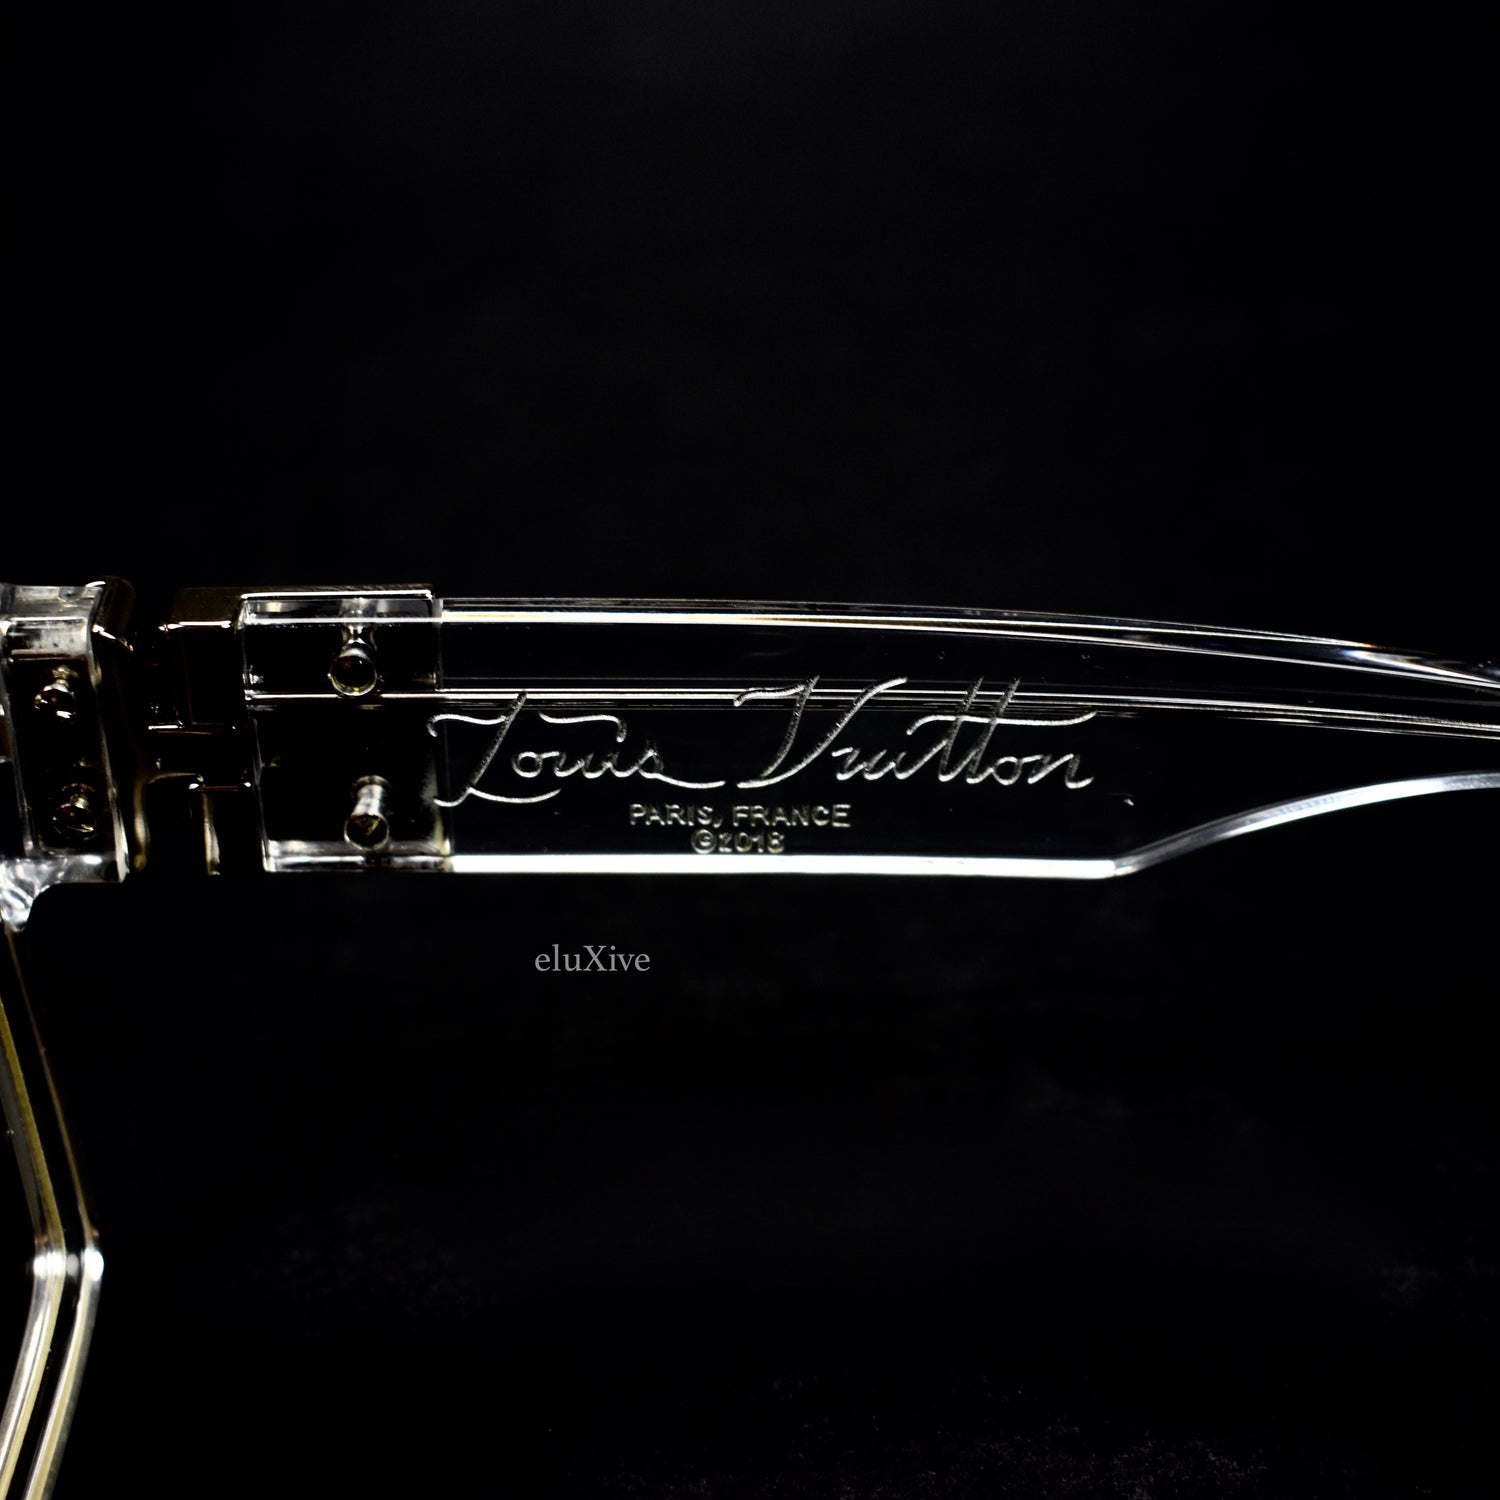 NEW LOUIS VUITTON 1.1 millionaire Transparent/Clear Virgil Sunglasses  $4,000.00 - PicClick